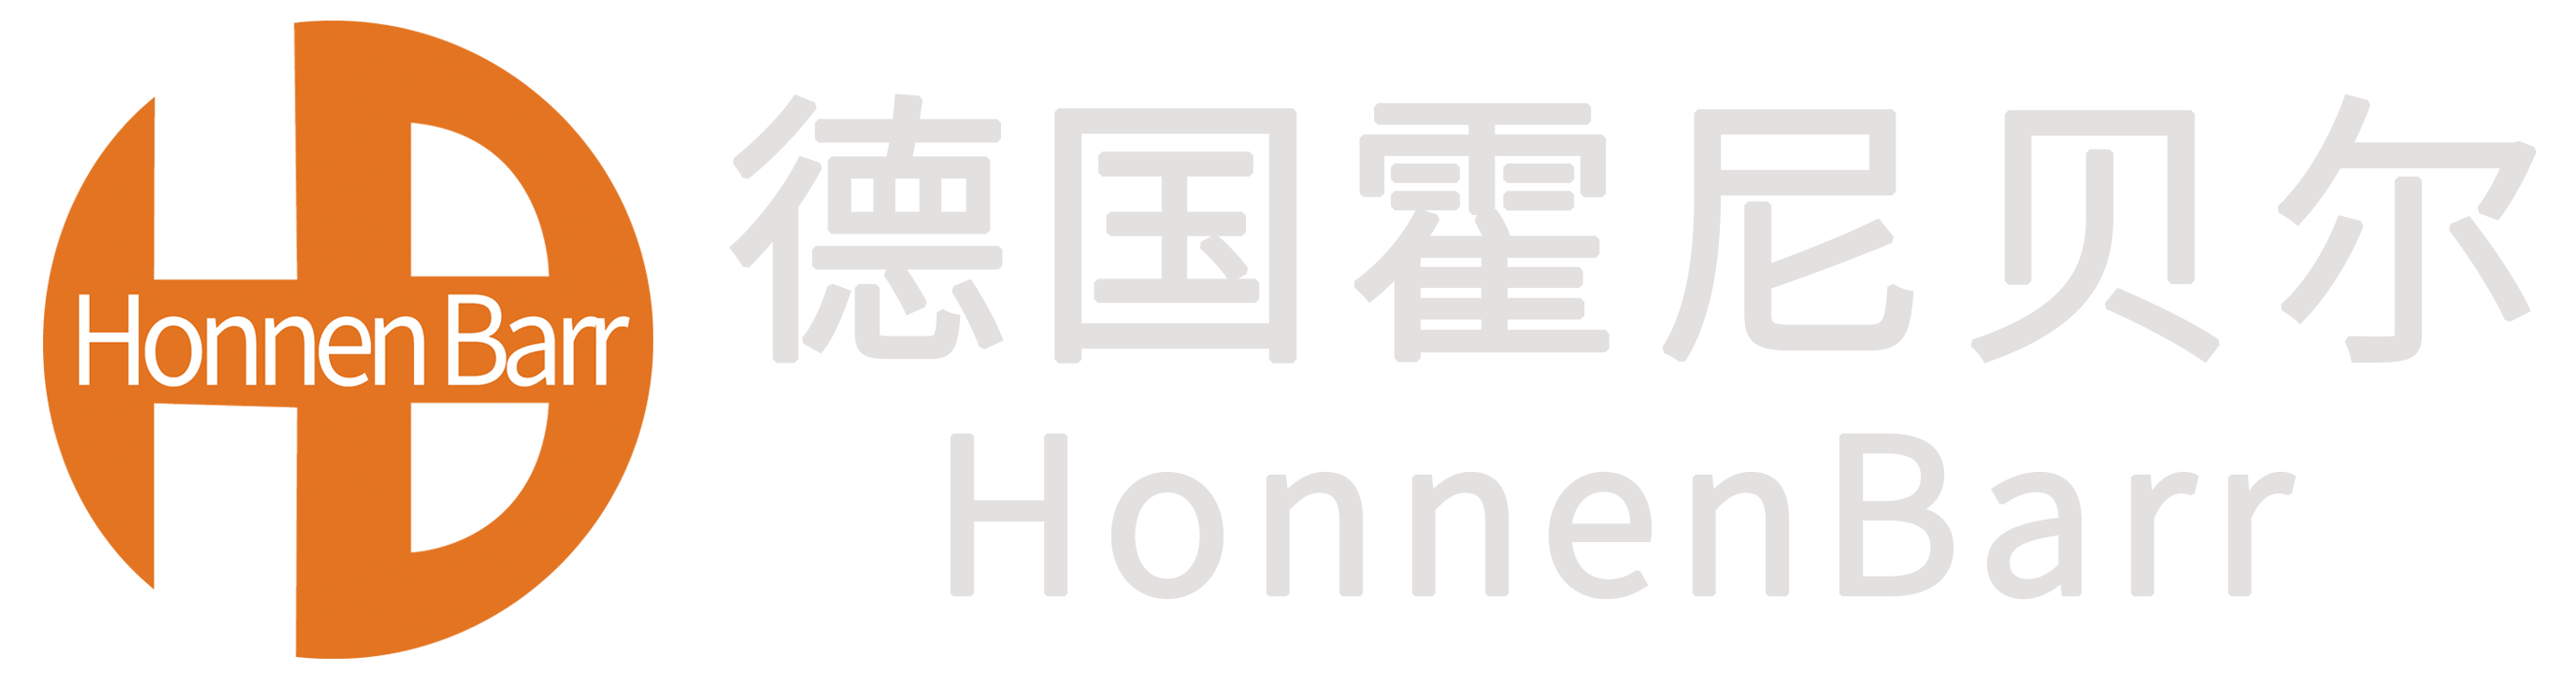 fraenkische-logo